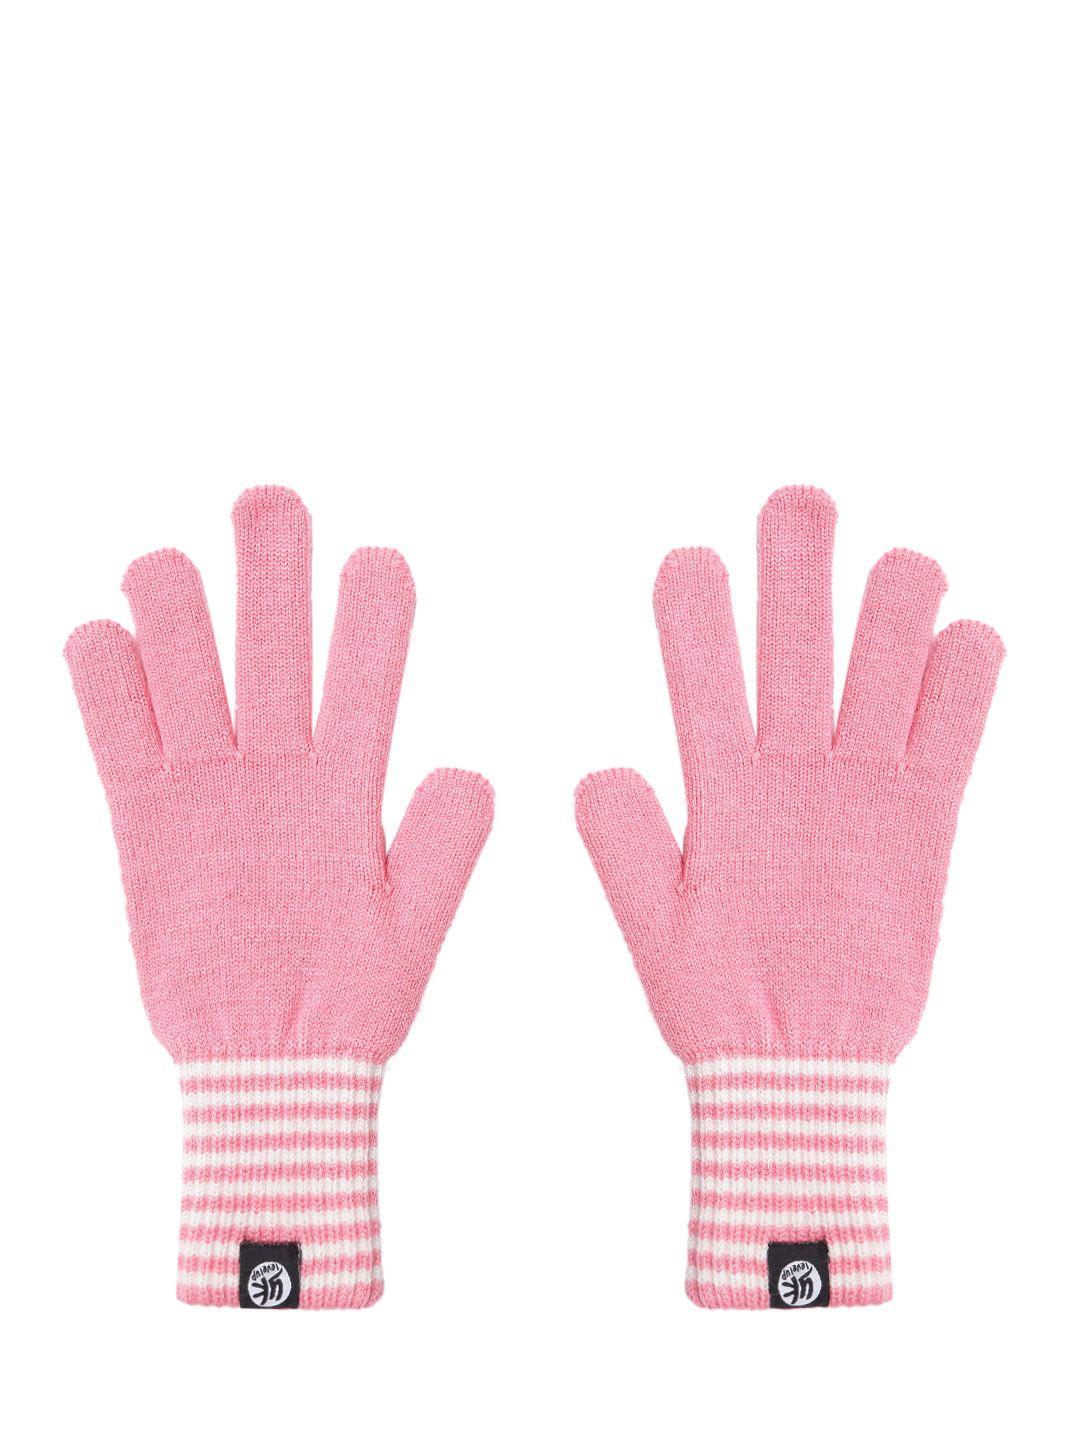 yk kids pink & white striped detail hand gloves